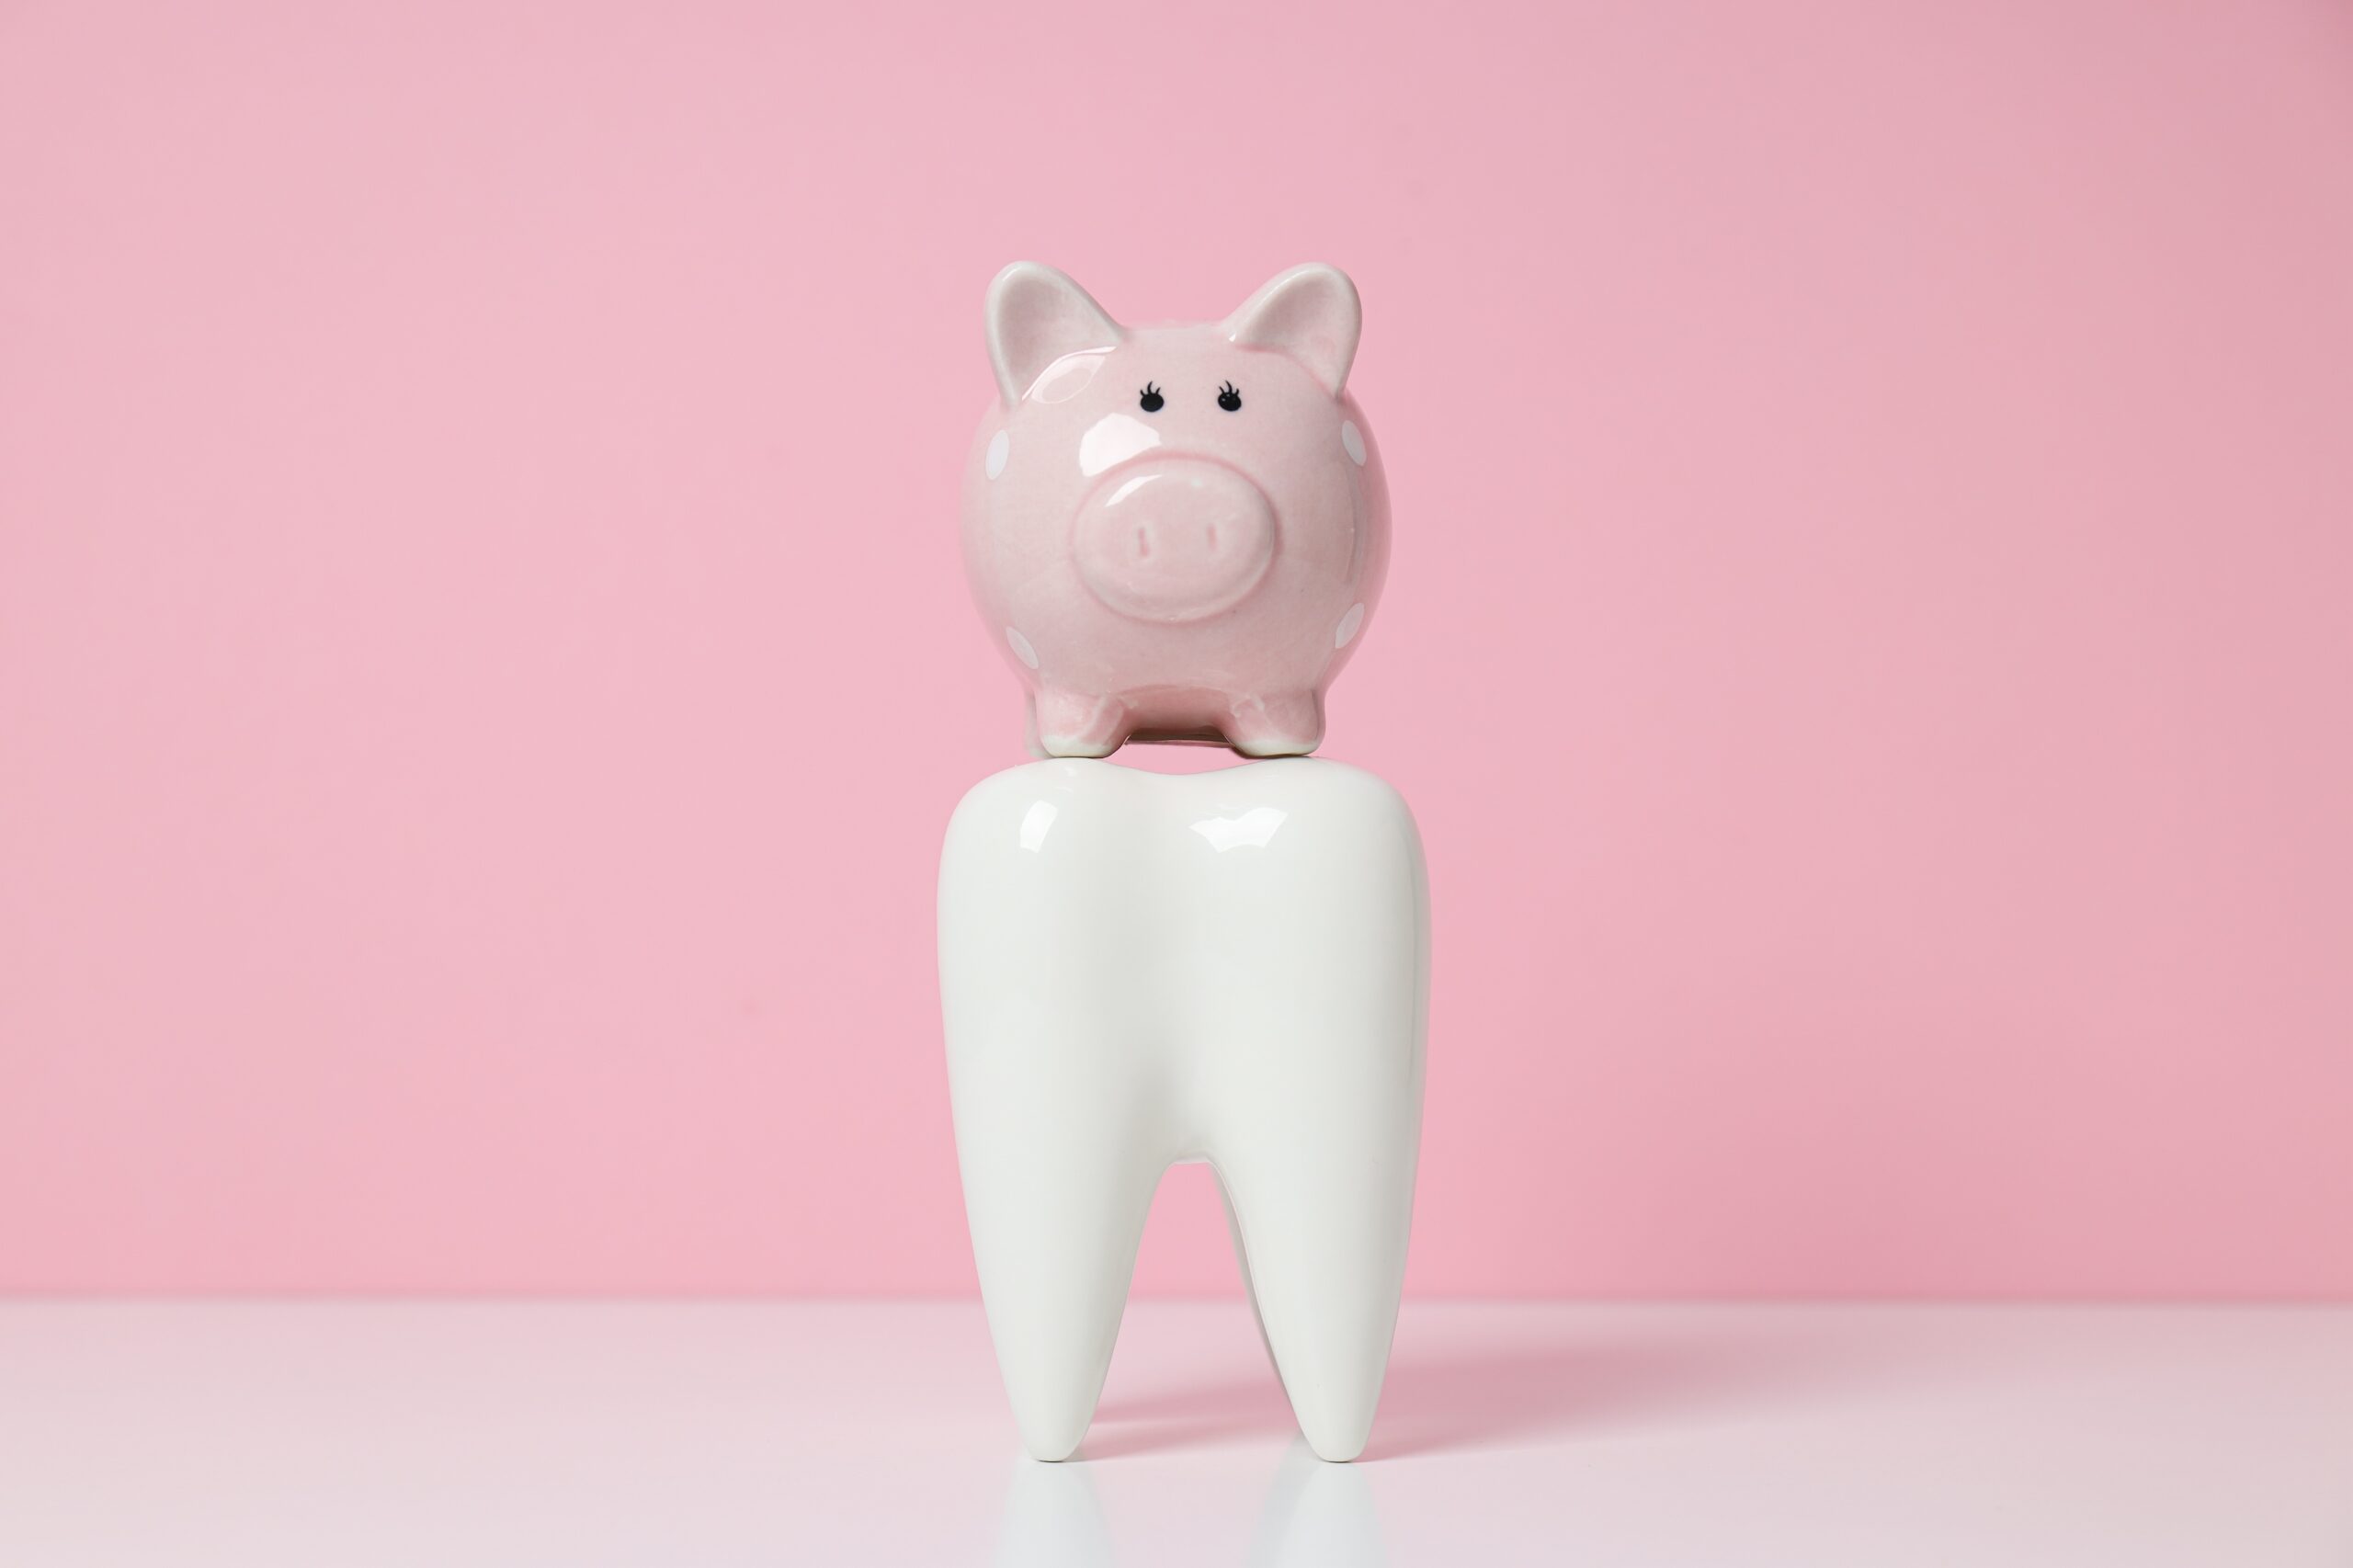 Preise für Zahnbehandlungen in der Türkei; künstlicher Zahn mit Sparschwein auf einem pinken Hintergrund